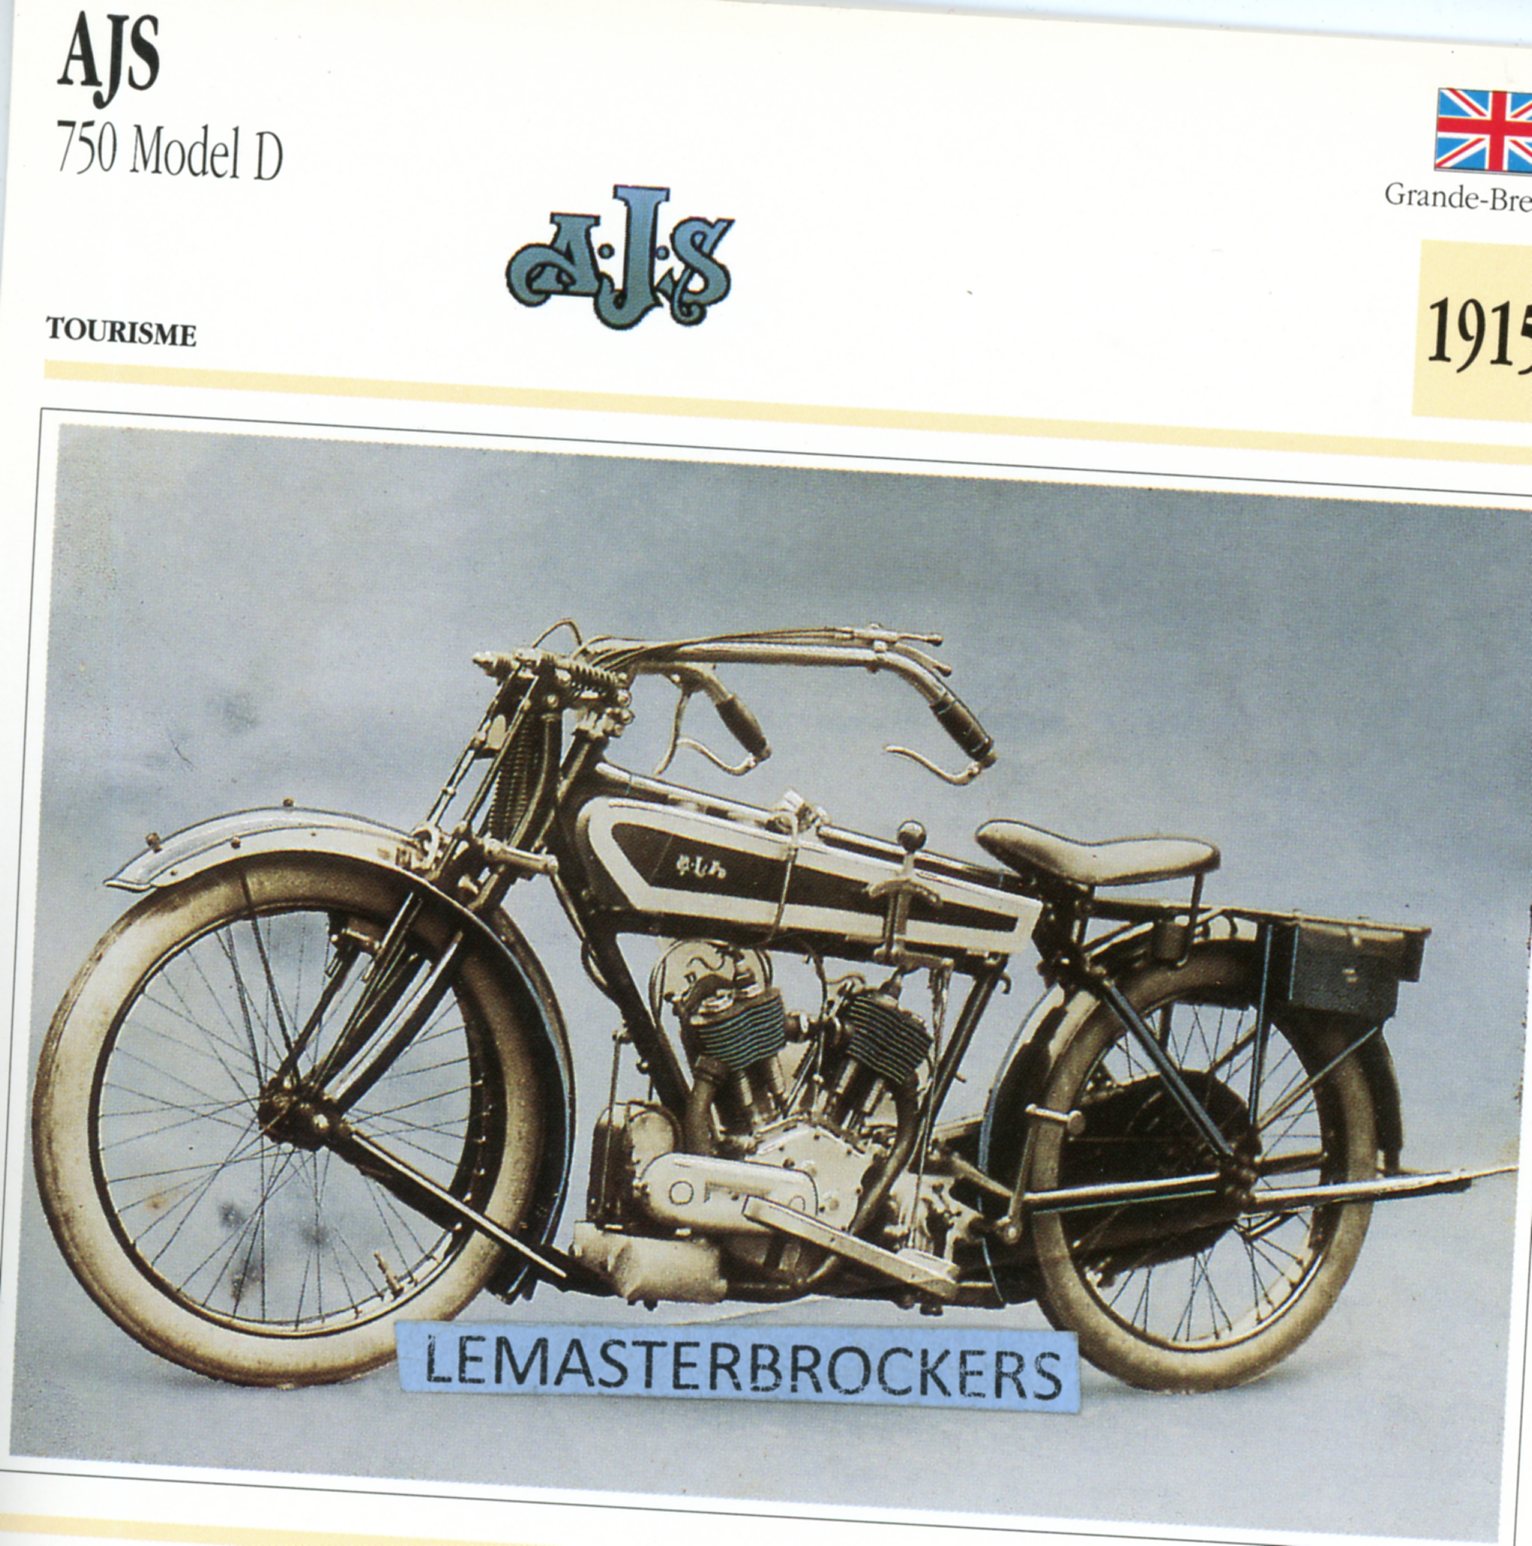 AJS 750 MDEL D 1915 - CARTE CARD FICHE MOTO CARACTERISTIQUES